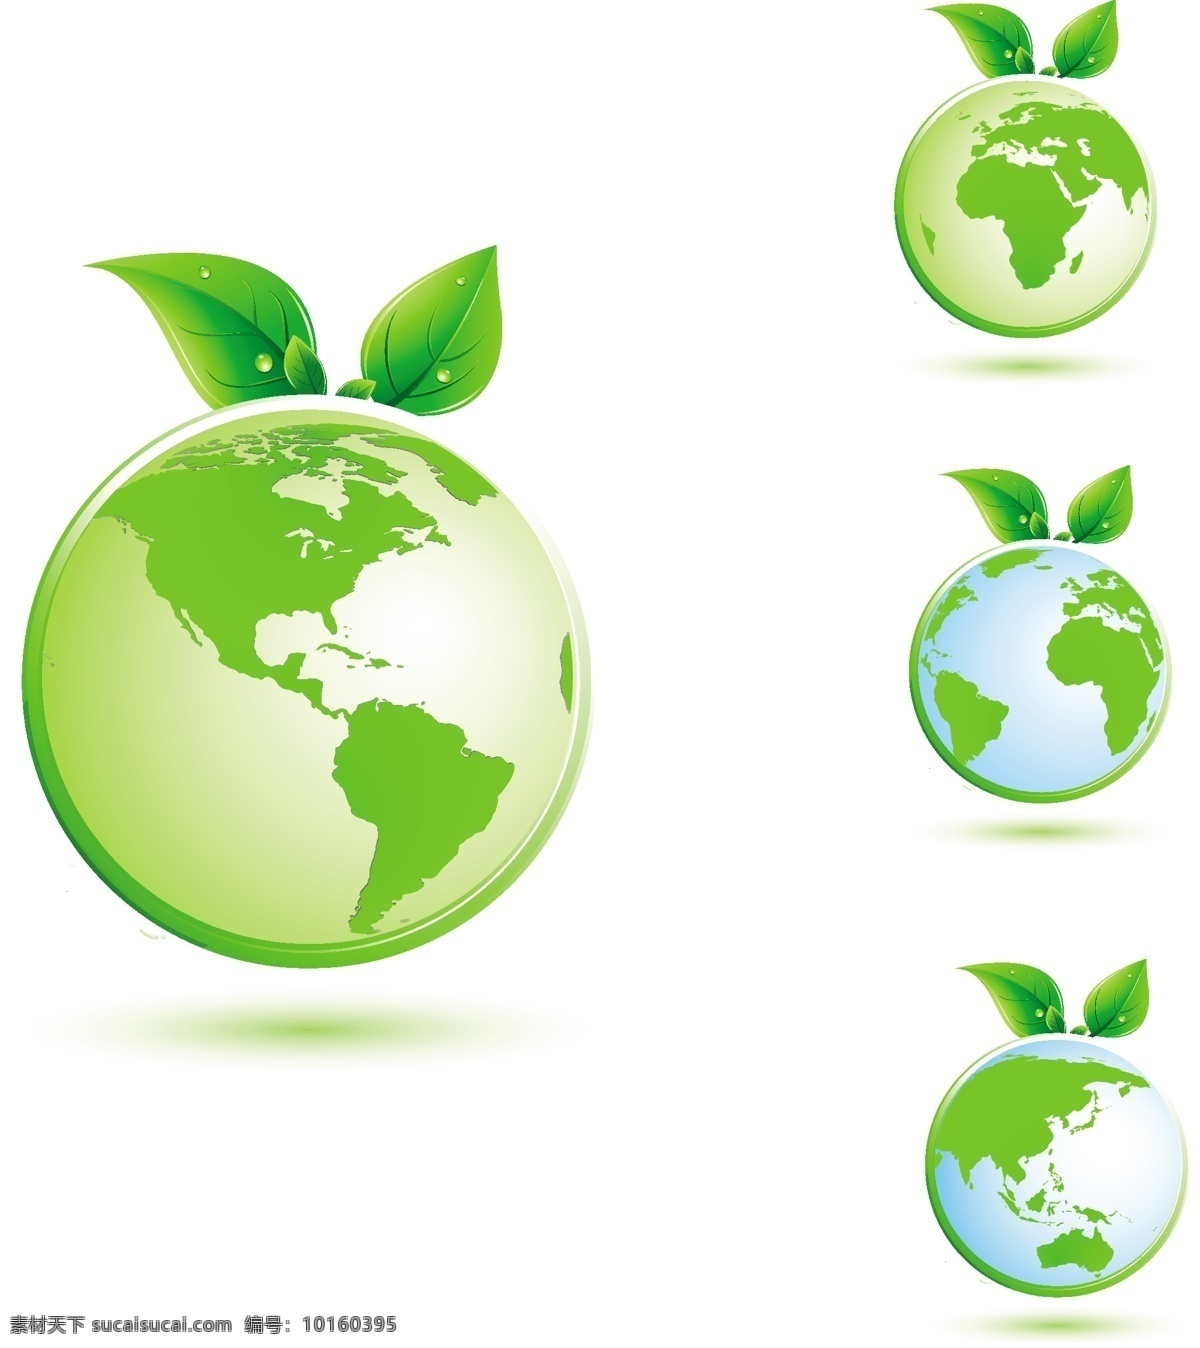 绿色地球插画 保护 地球 地球仪 地图 符号 概念 环境 环境保护 回收 回收标志 警觉的 生物 清洁 清洗 全球通信 绿 医疗保健 医学 健康 生活方式 的想法 土地 叶 自然 有机 行星 污染 树 水 世界地图 矢量图 其他矢量图